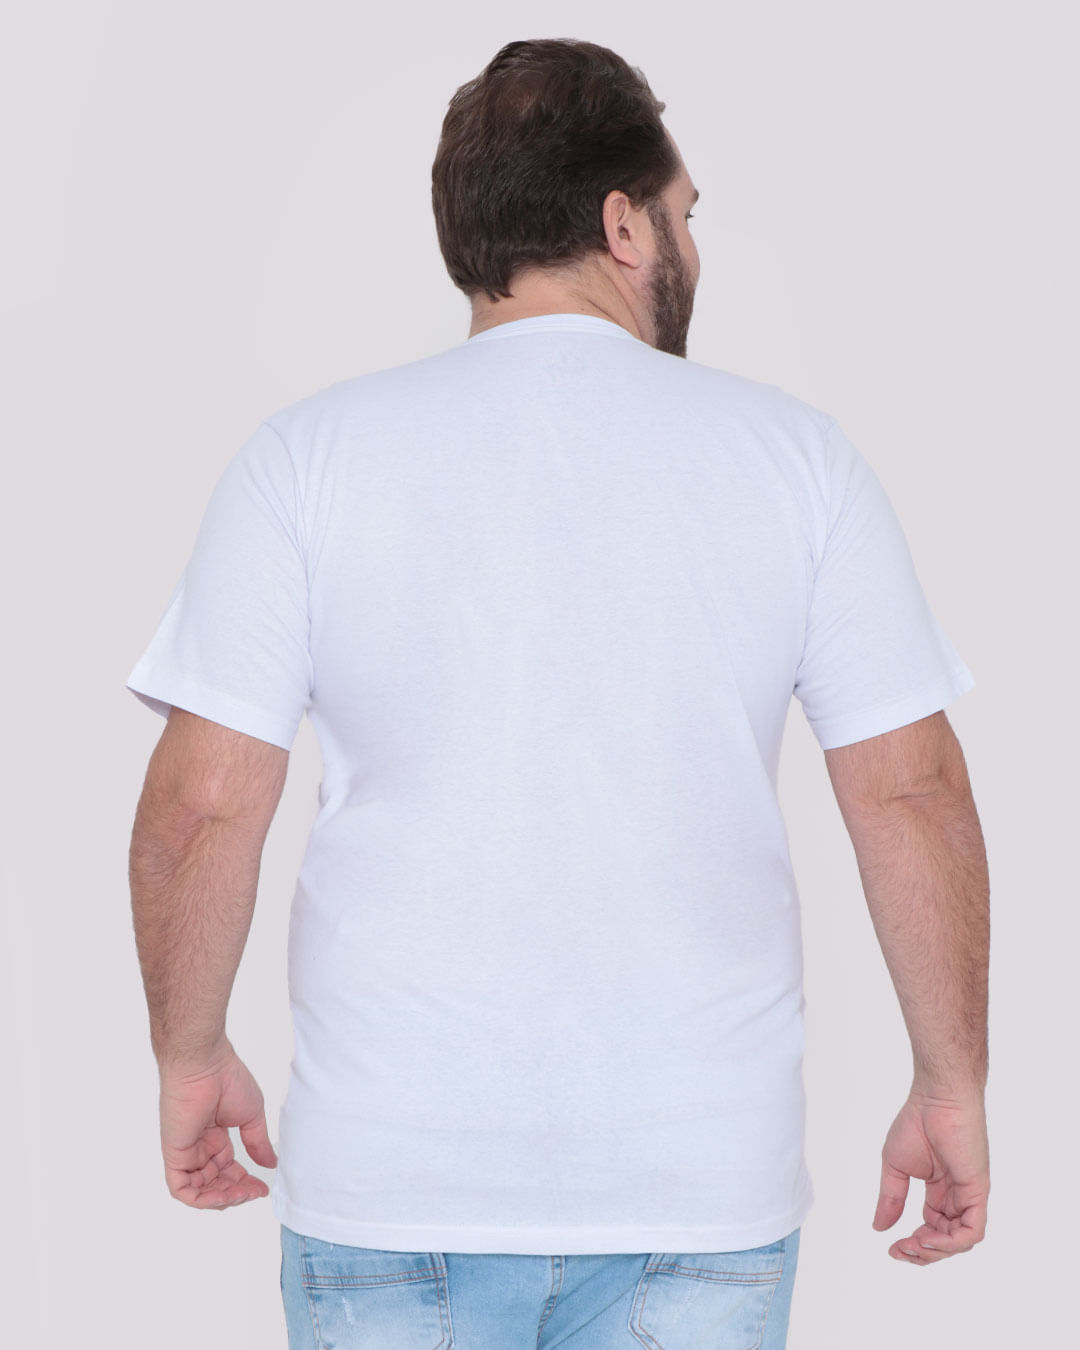 Camiseta-Plus-Size-Masculina-Folhagem-Branca-